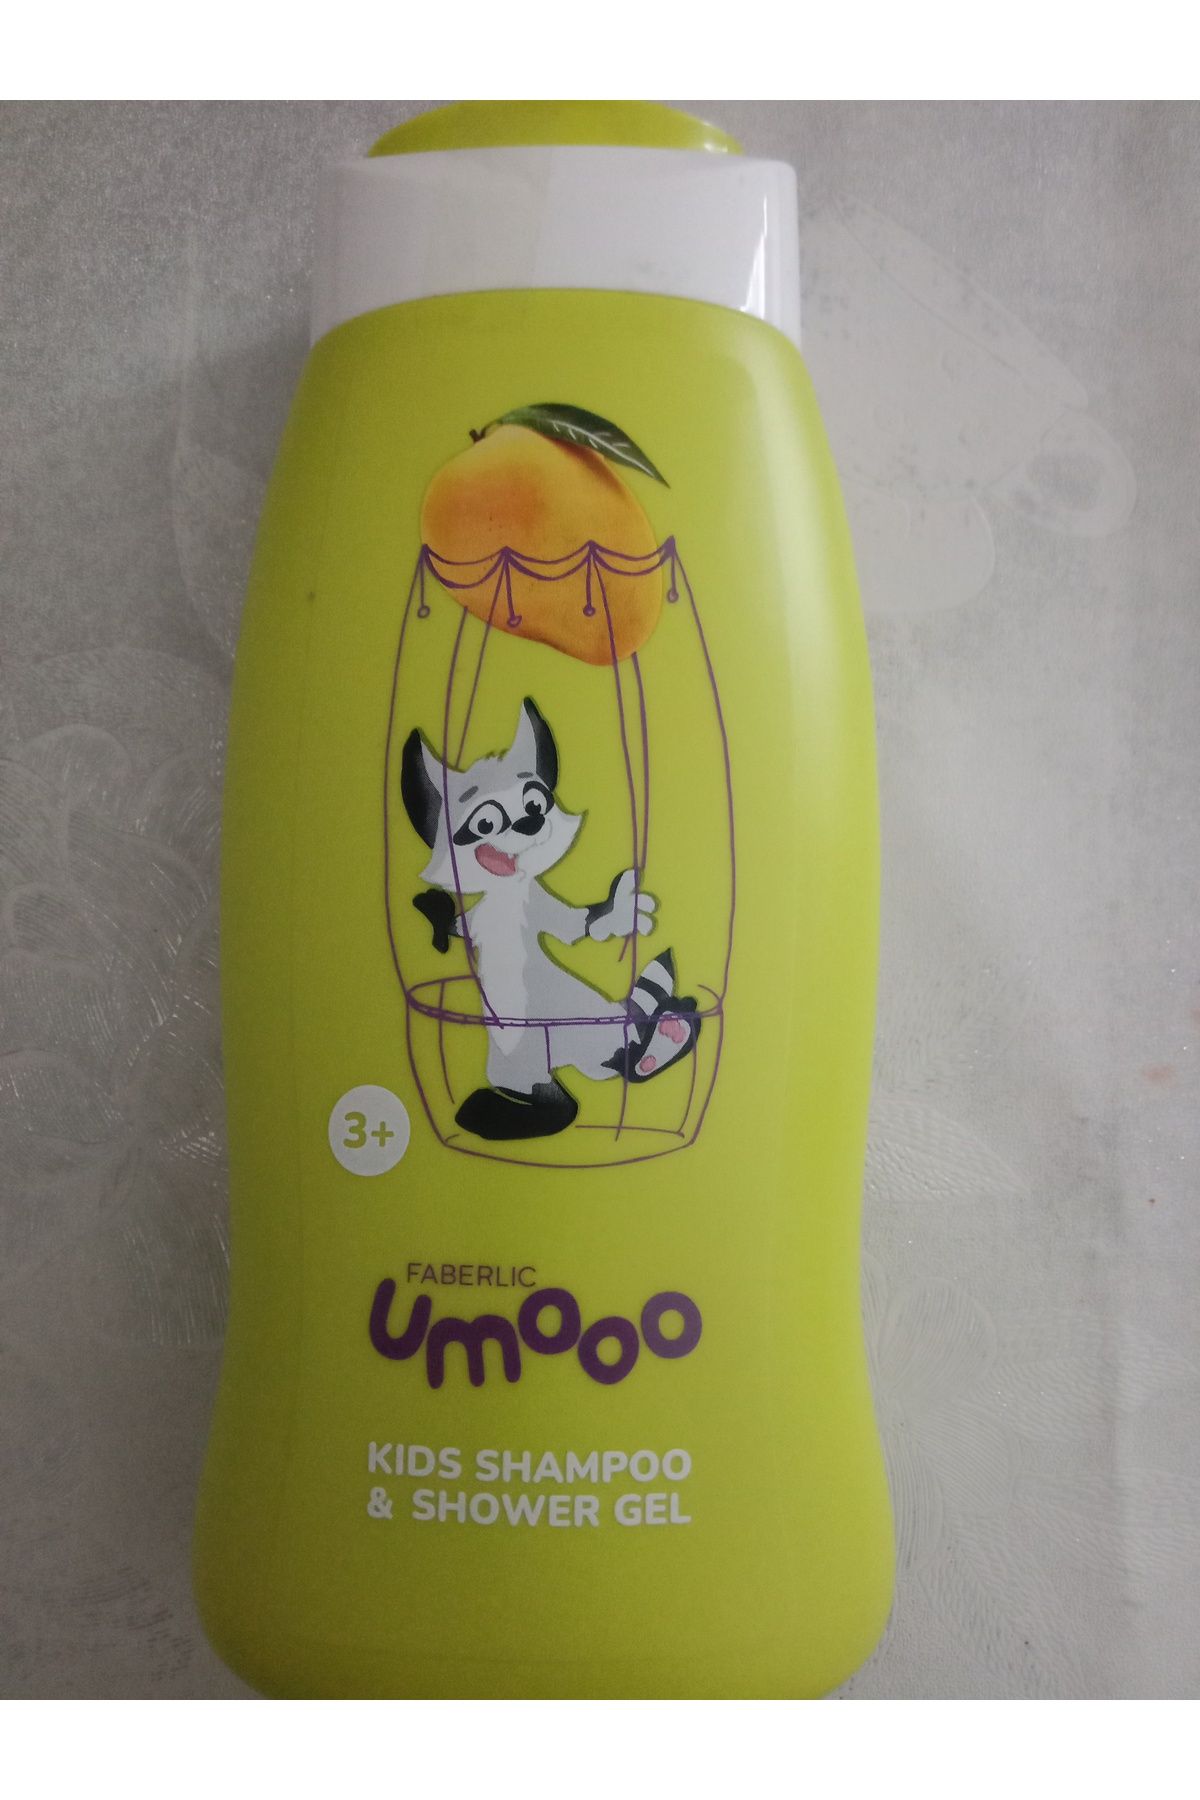 Faberlic FABERLİC Umooo 3+ Serisi Çocuklar İçin Şampuan-Duş Jeli

Ürün Kodu: 2824